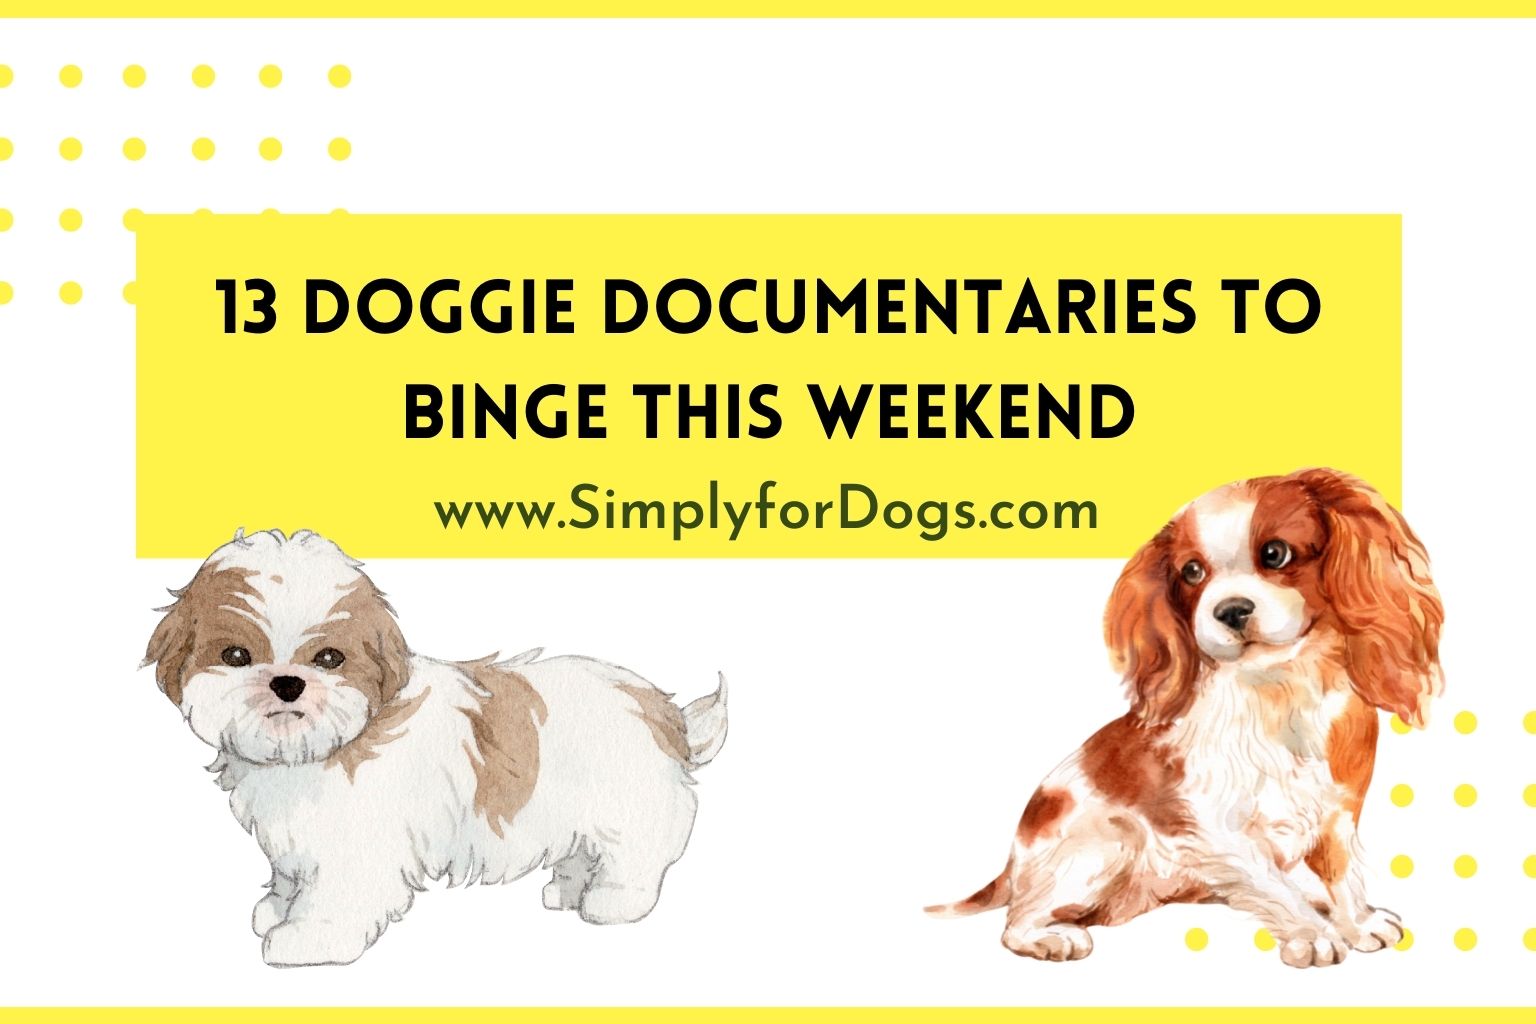 13 Doggie Documentaries to Binge This Weekend